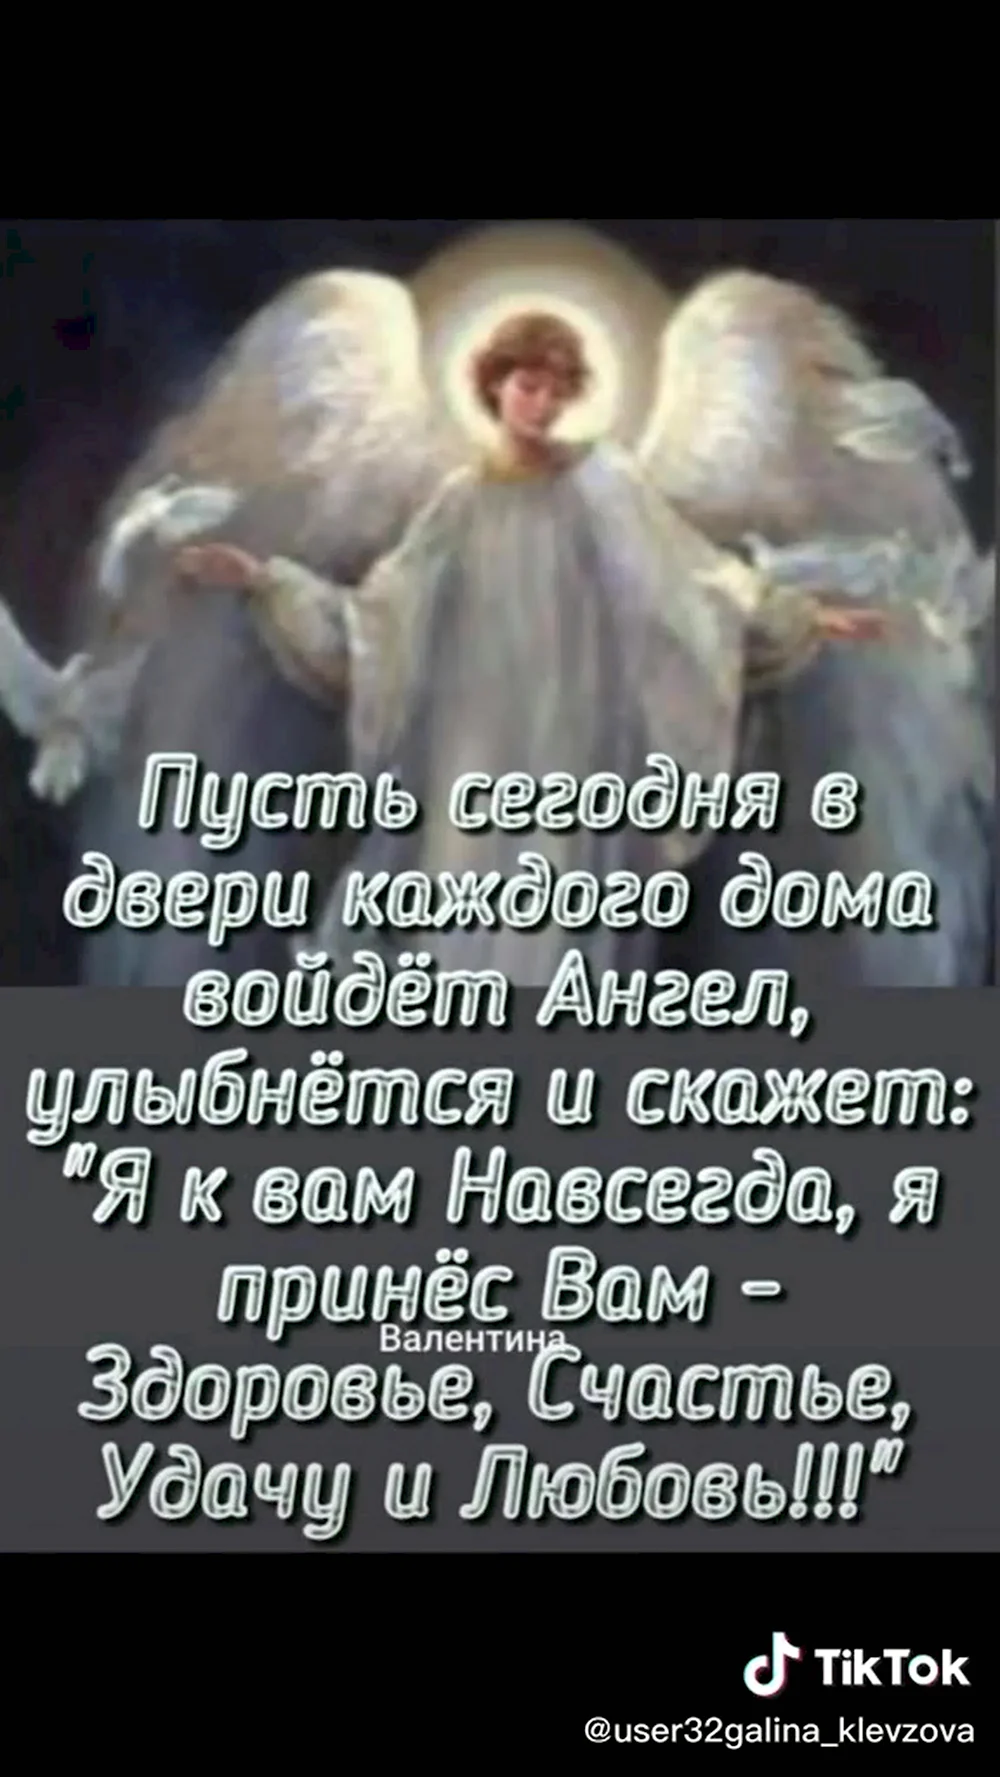 Ангела хранителя вам